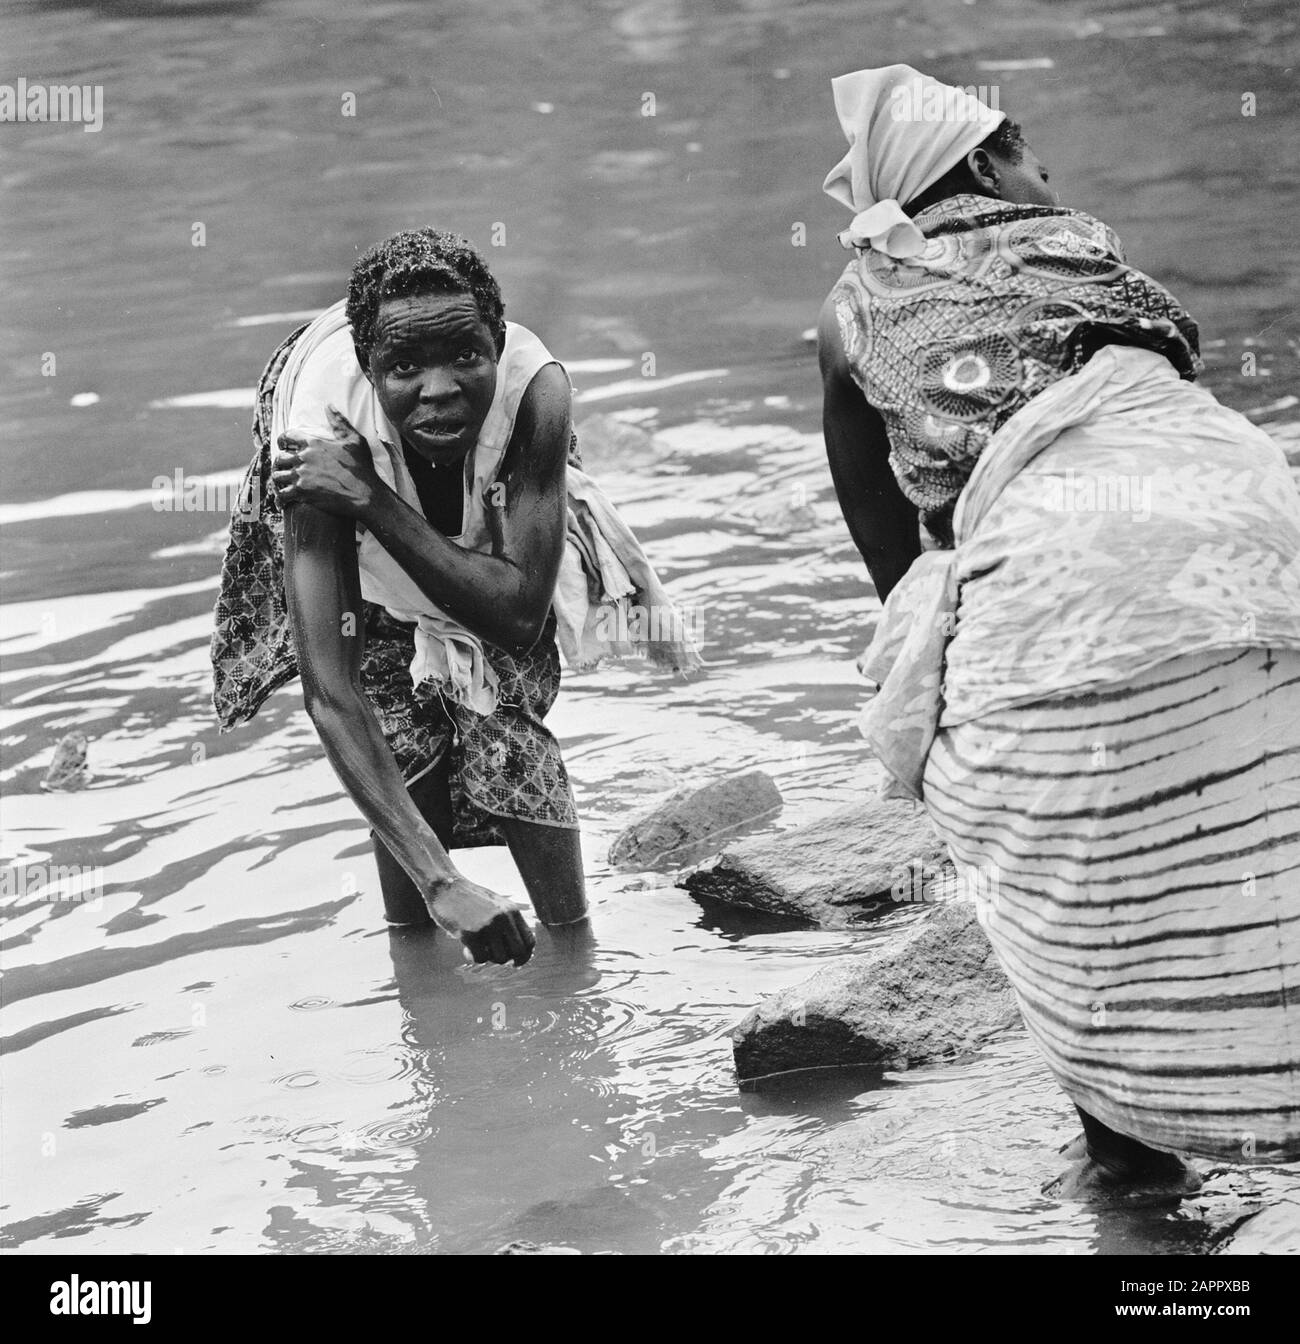 Zaire (früher Belgisch-Kongo) Leben auf dem Land; Frauen während des Waschens Datum: 24. Oktober 1973 Ort: Kongo, Zaire Schlüsselwörter: Frauen, Waschen Stockfoto